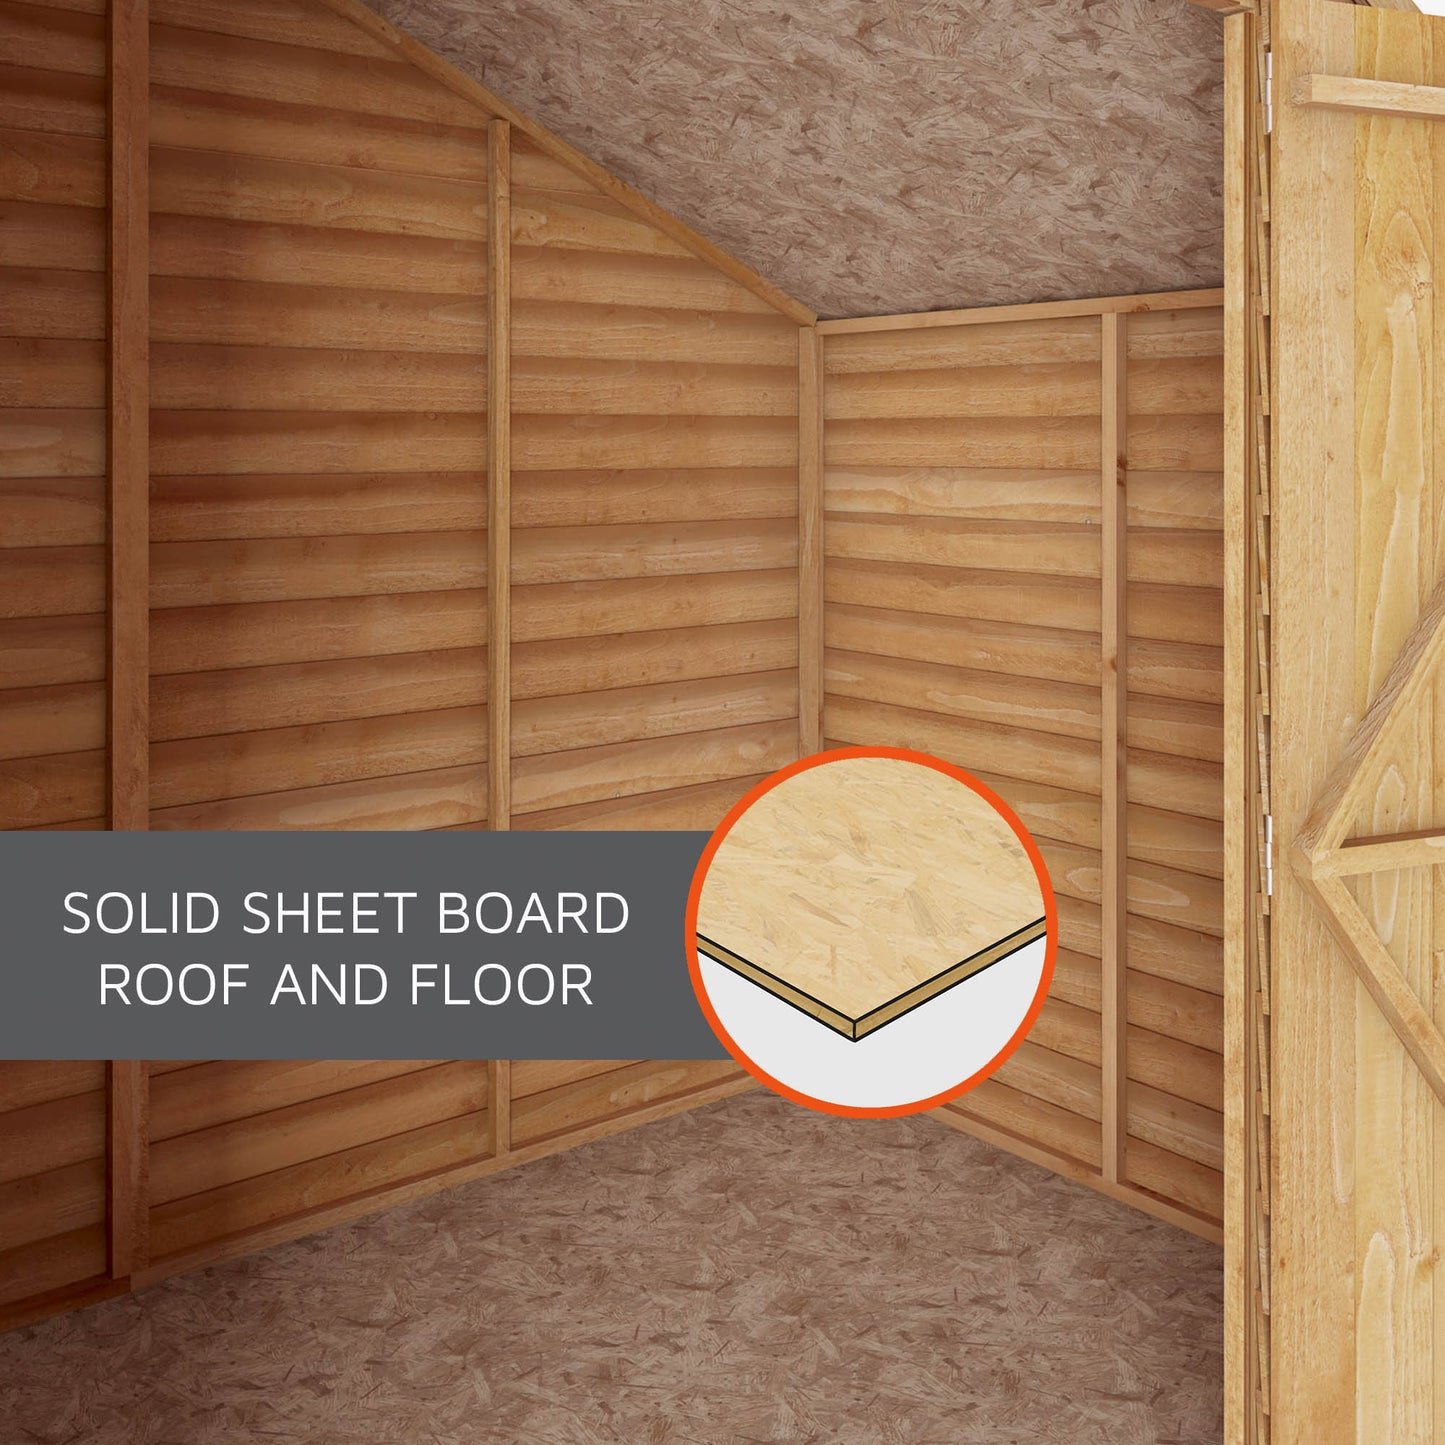 10 x 6 Overlap Double Door Apex Wooden Shed